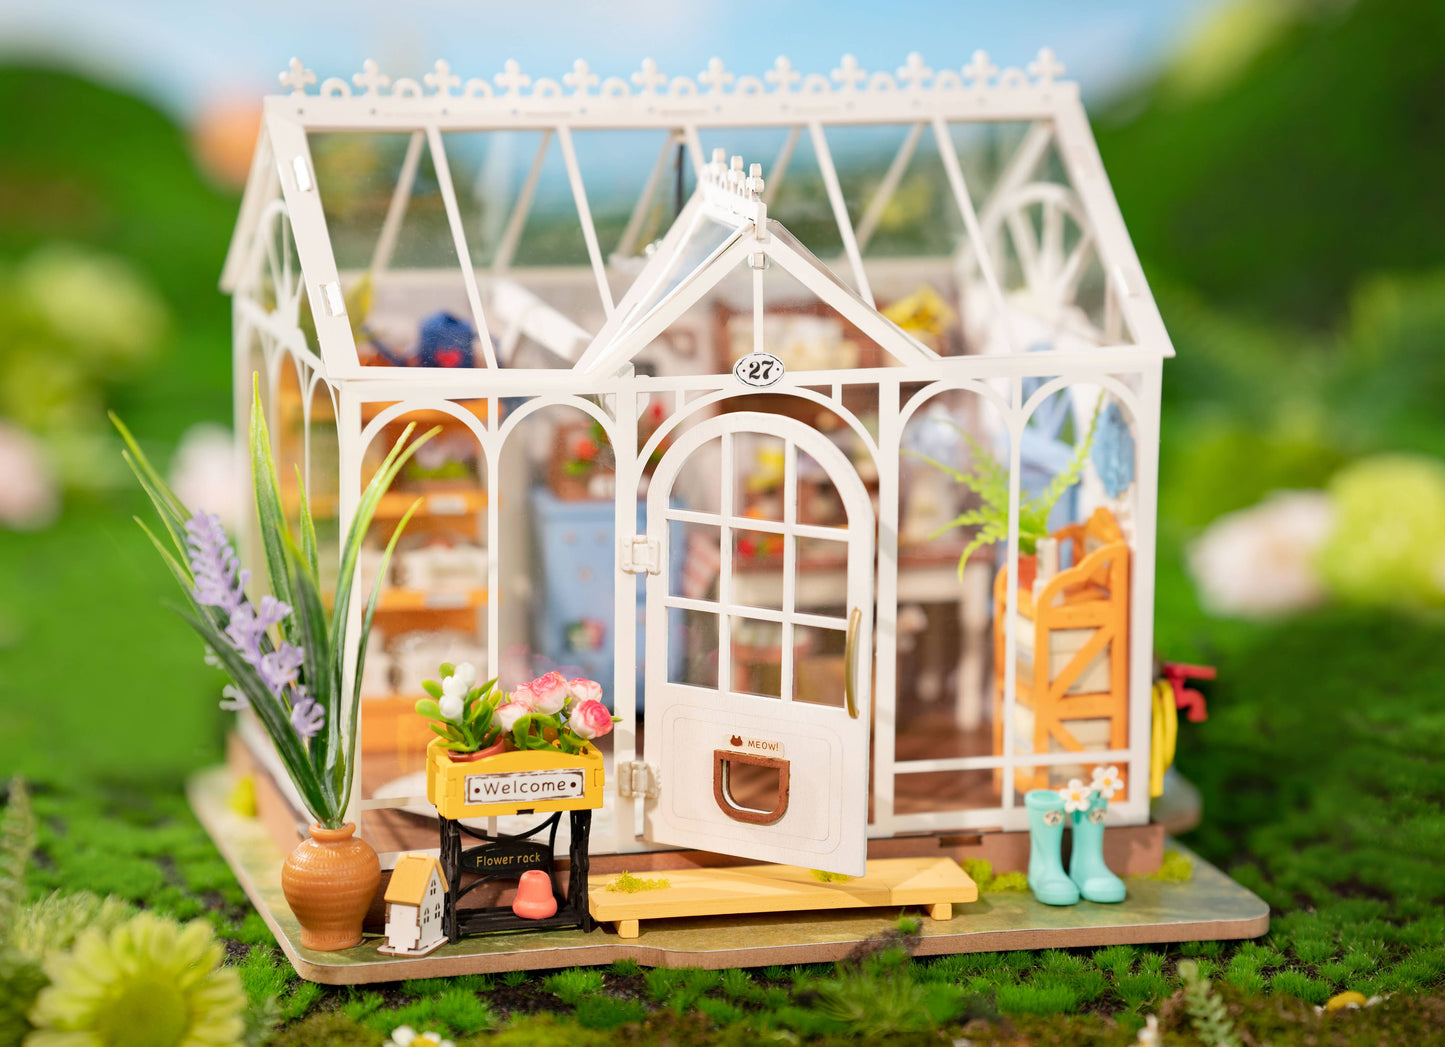 DIY Miniature House Kit: Dreamy Garden House